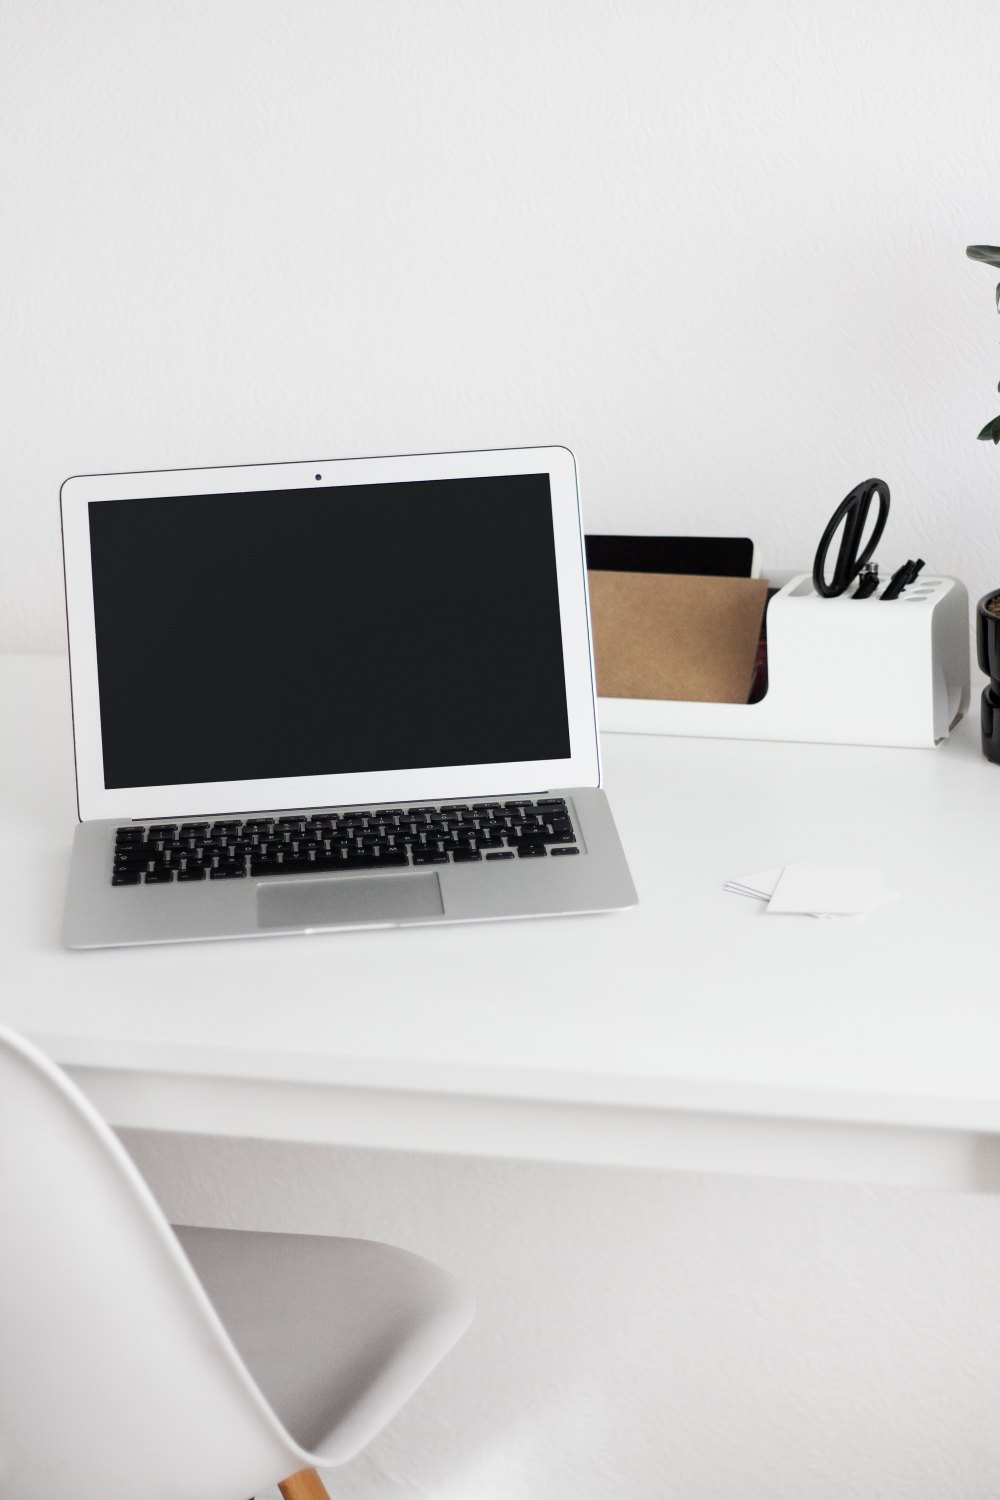 Free mockup: Macbook Air in home office